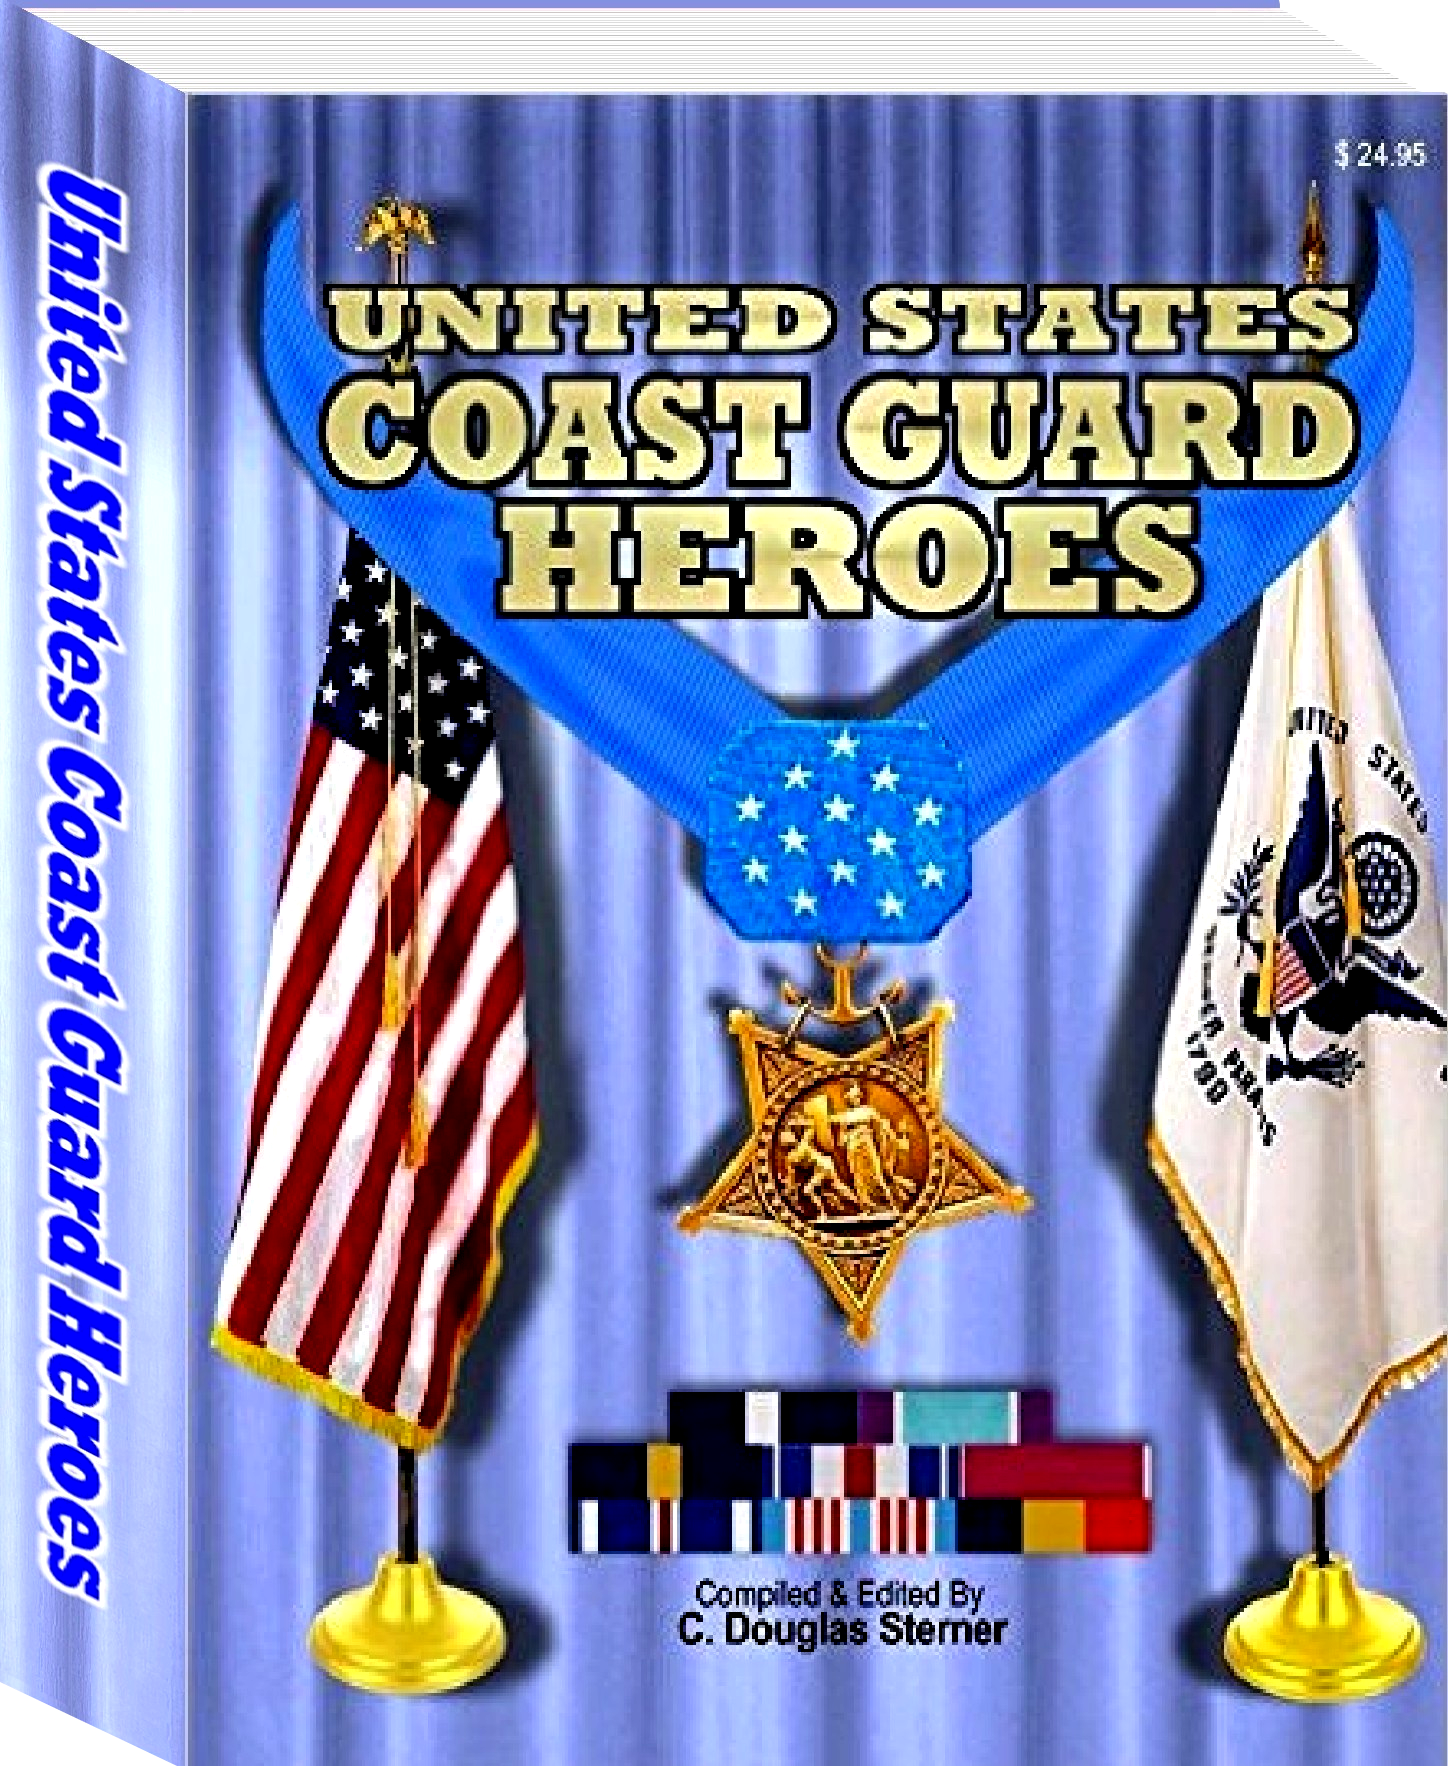 Coast Guard Medals of Honor